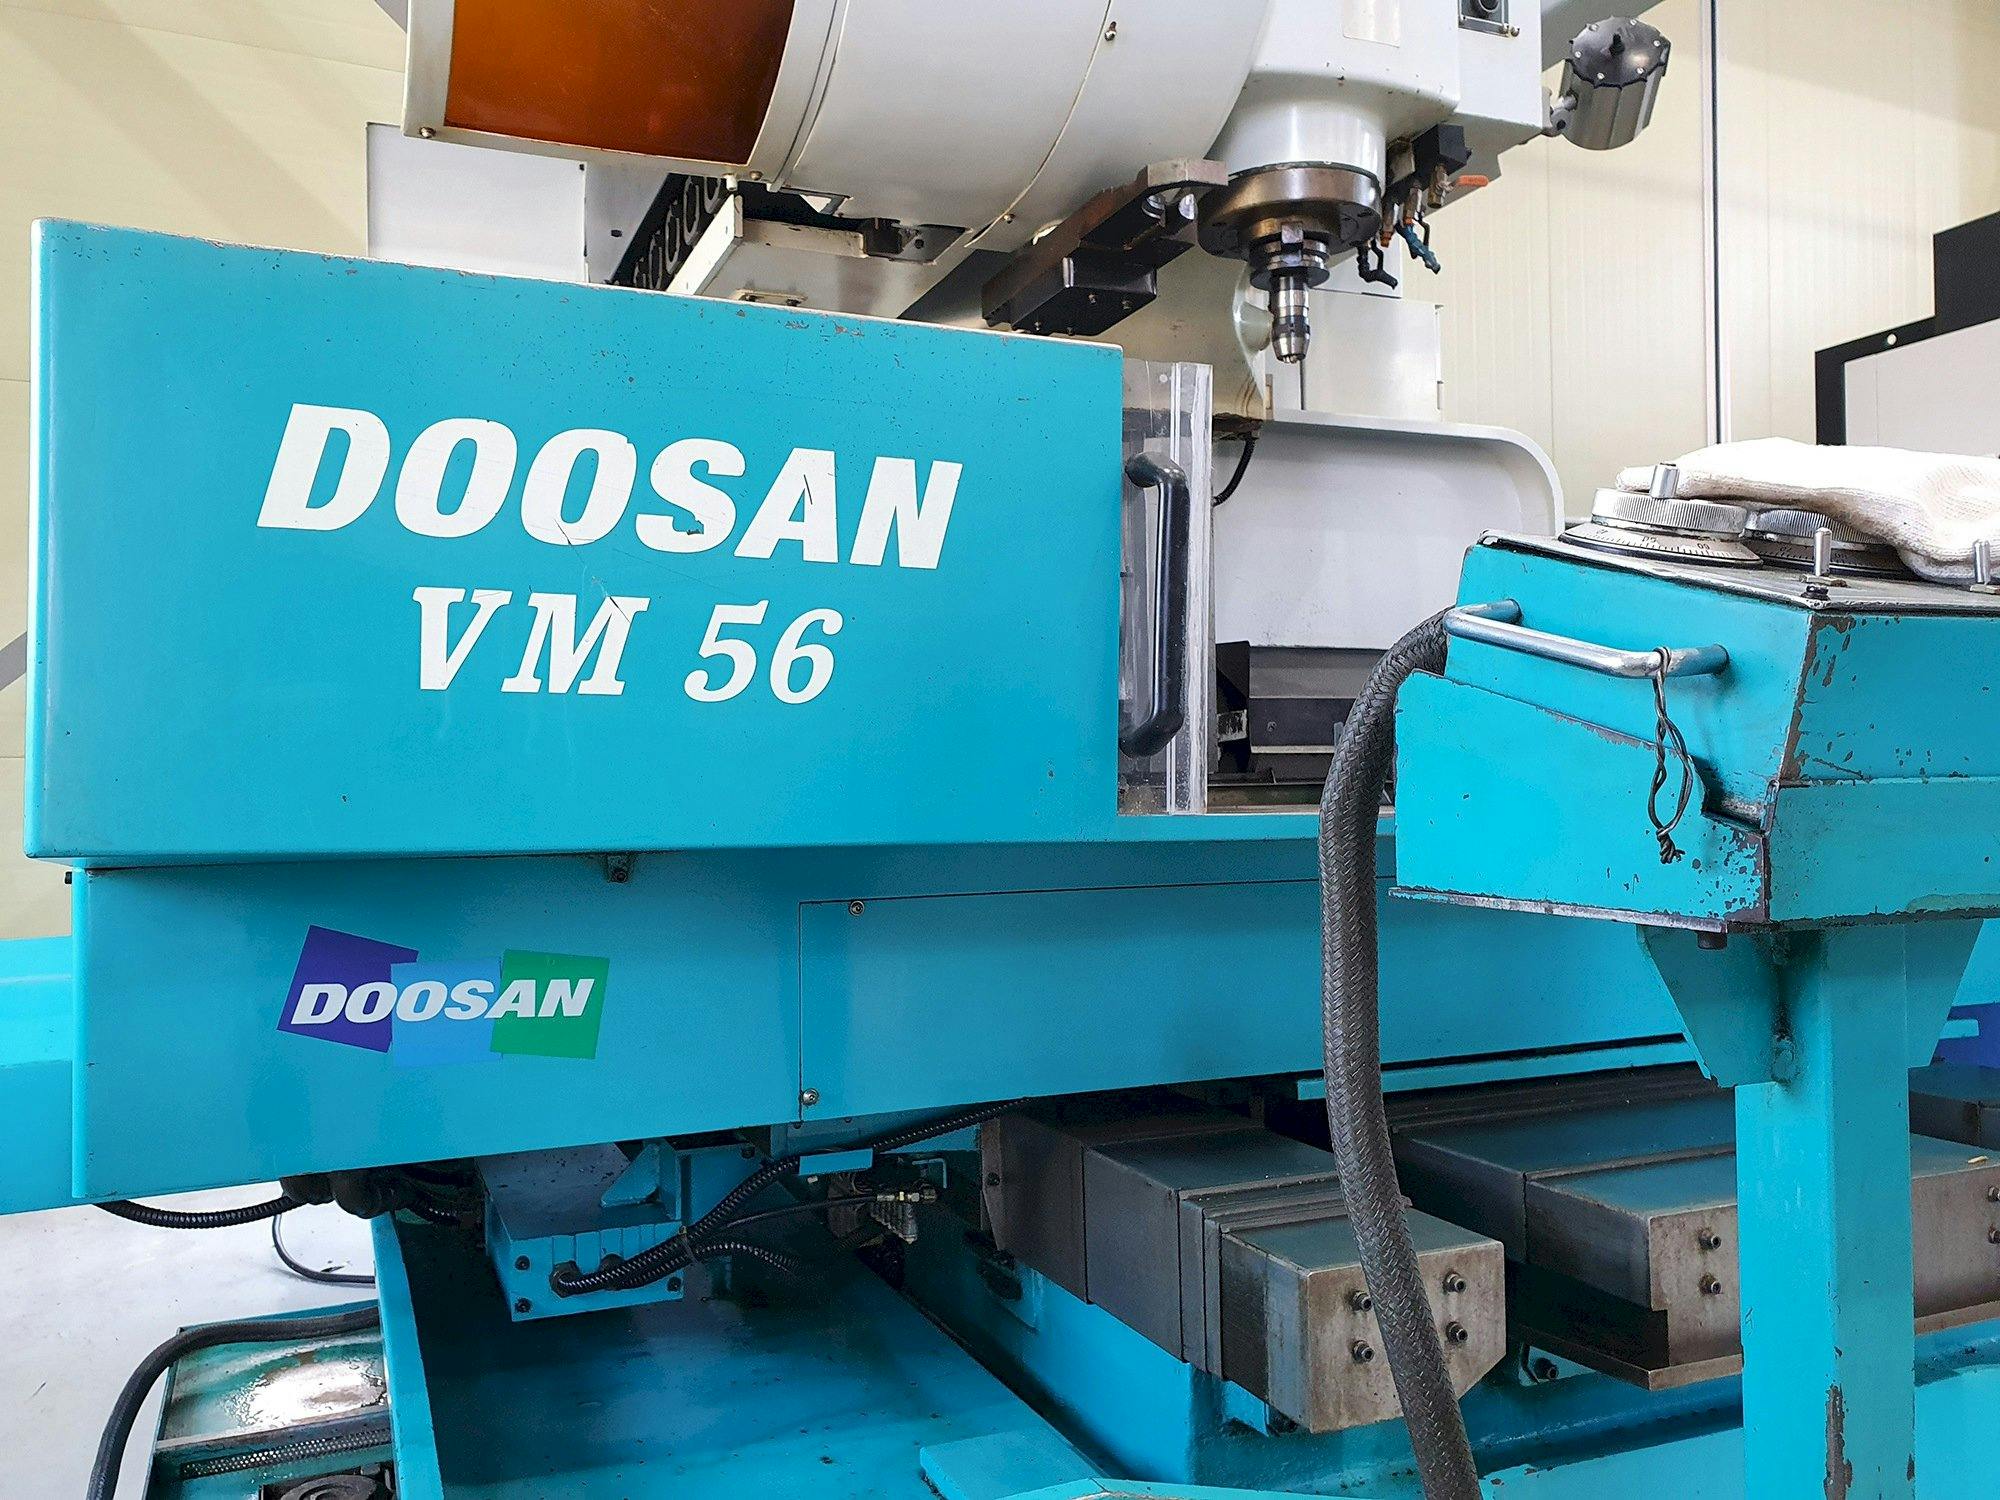 Vista frontal de la máquina Doosan VM56